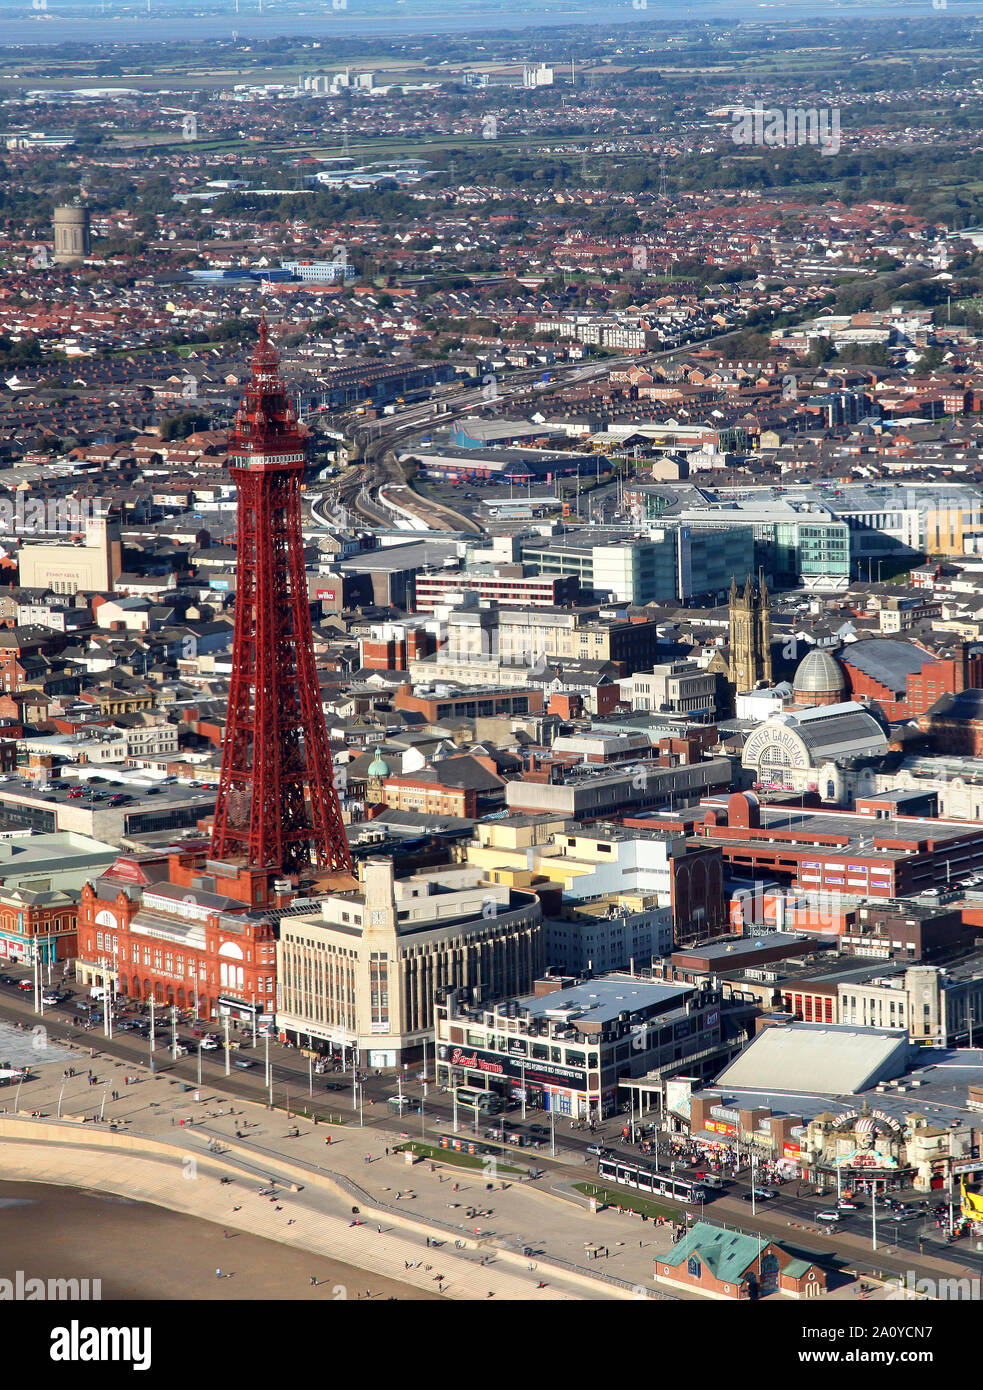 La Blackpool Tower e tram dall'aria. Foto Stock